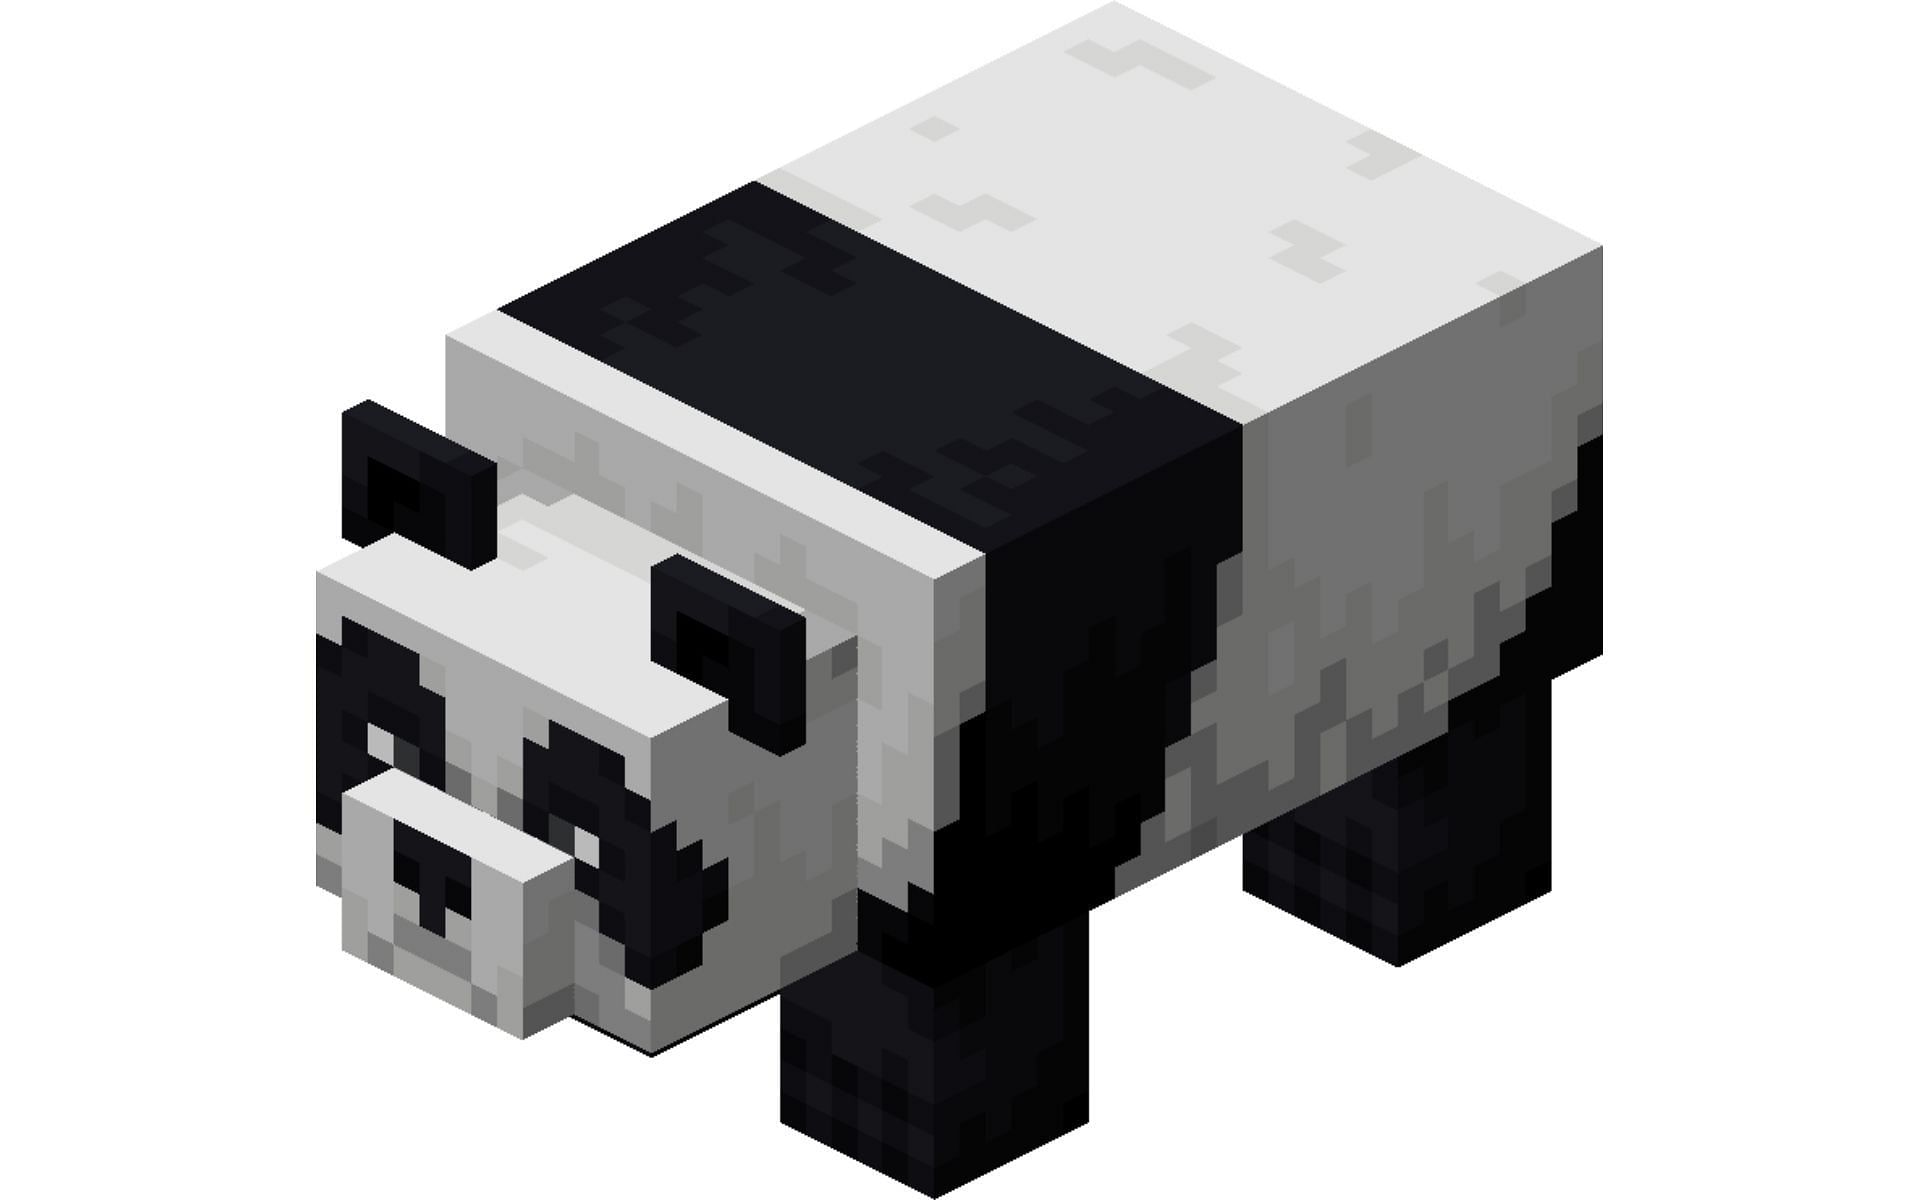 In-game model of the Panda (Image via Fandom)